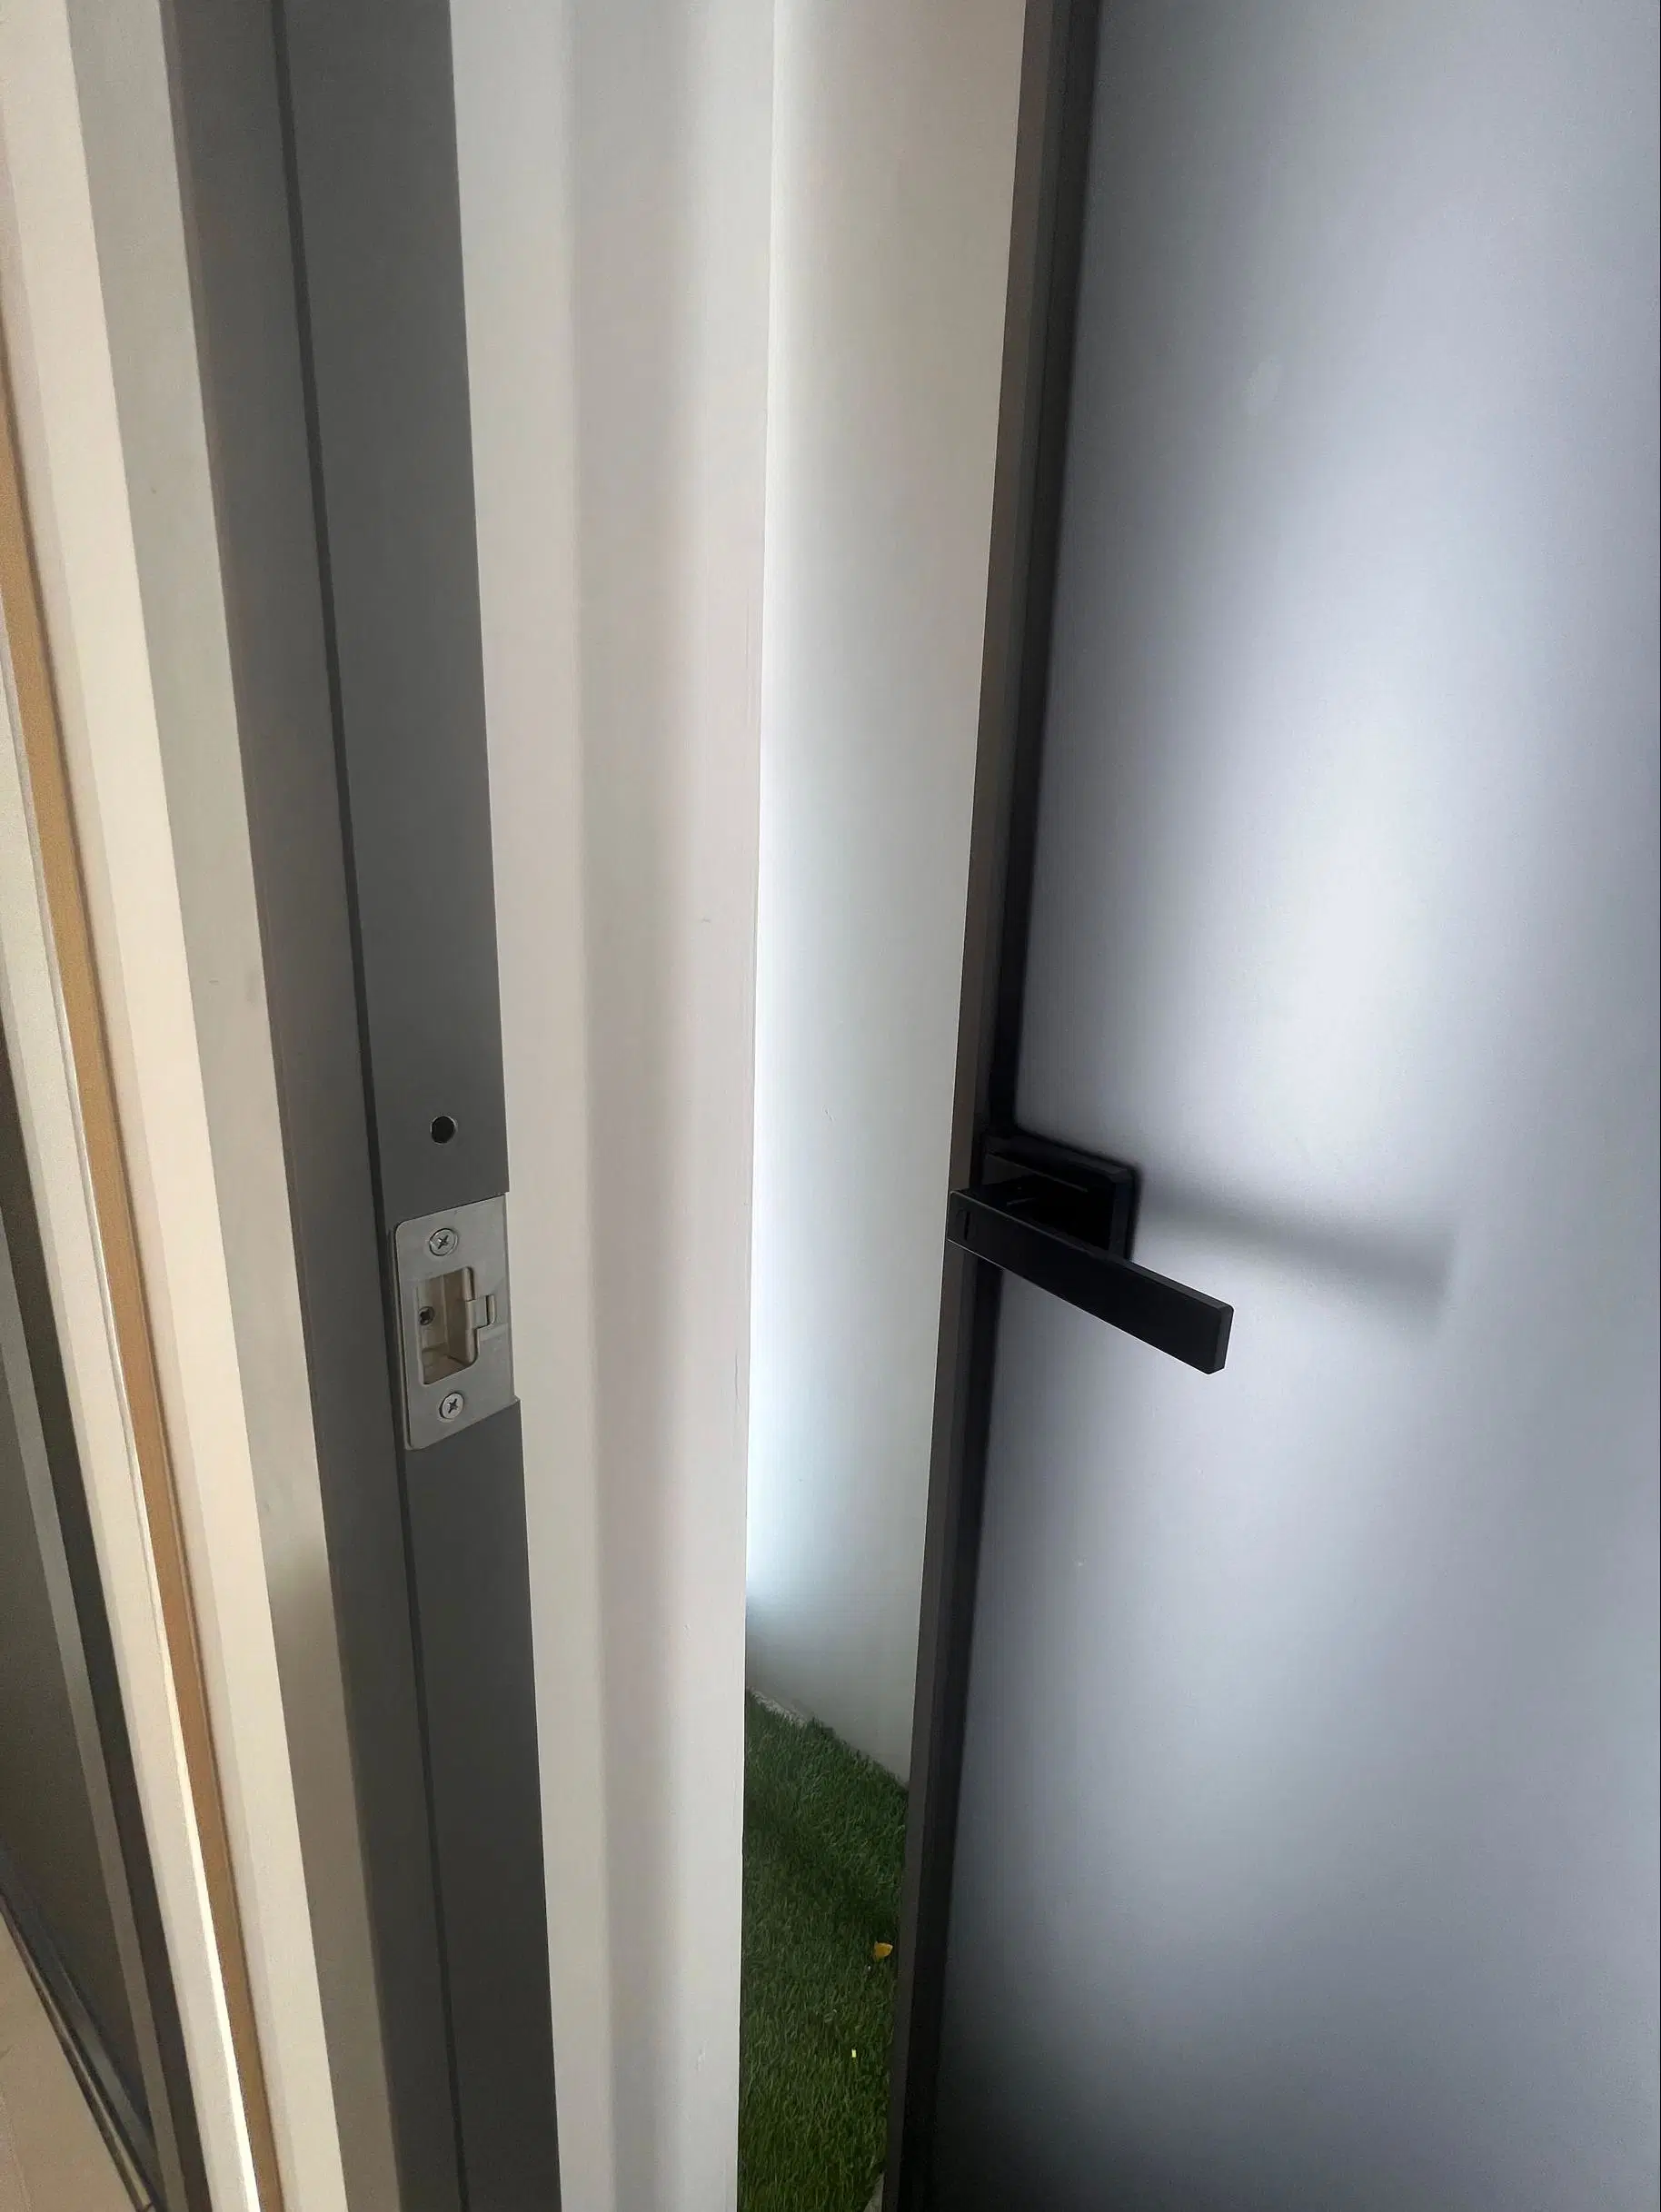 Novo design do revestimento a pó Interior moderno banheiro Casement Porta de vidro de alumínio de design da porta de Giro